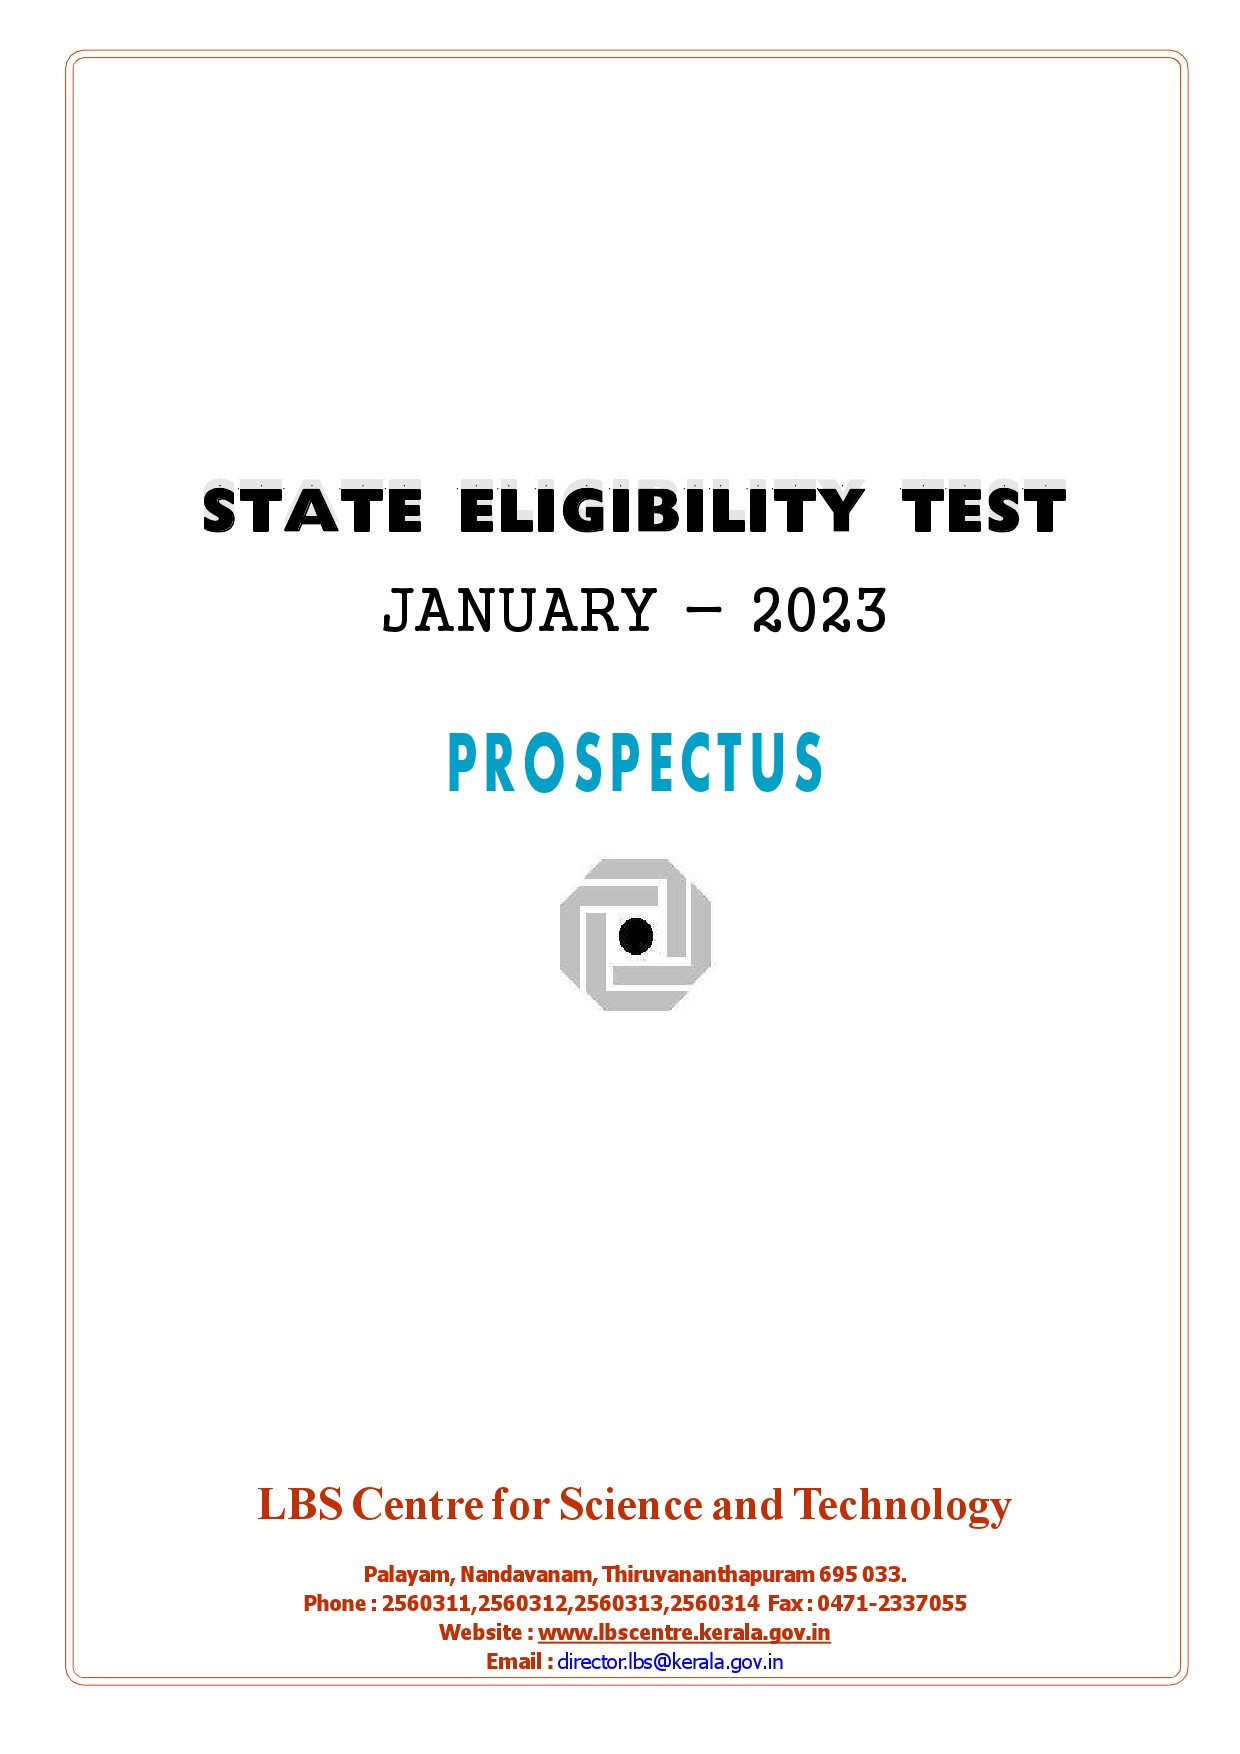 State Eligibility Test January 2023 Prospectus - Notification Image 1